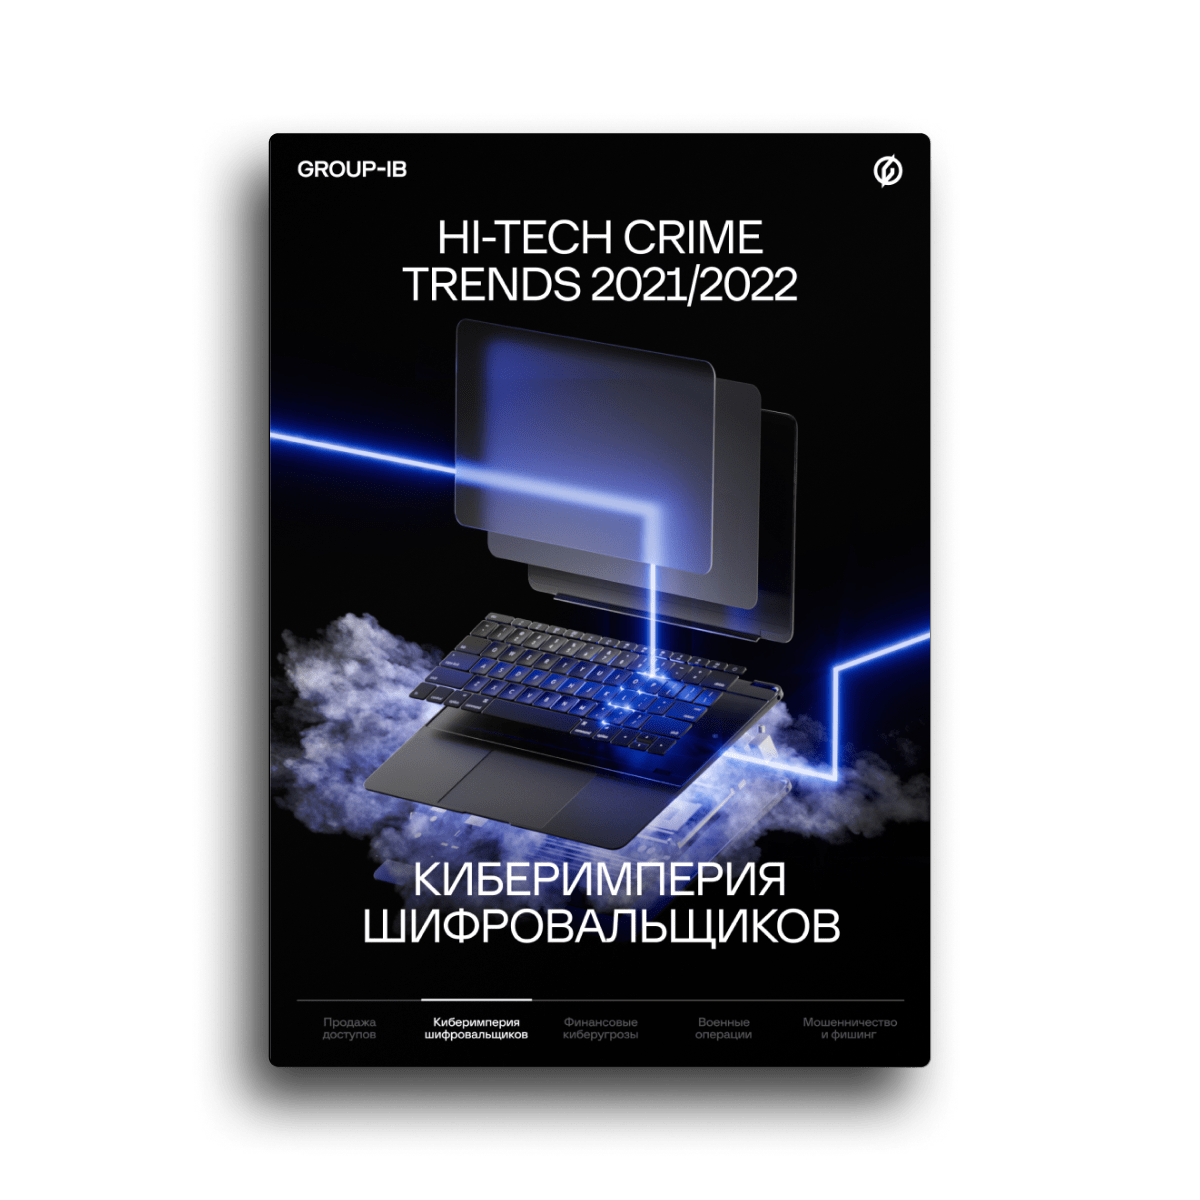 Hi-Tech Crime Trends 2021/2022. Угроза №1: Киберимперия шифровальщиков